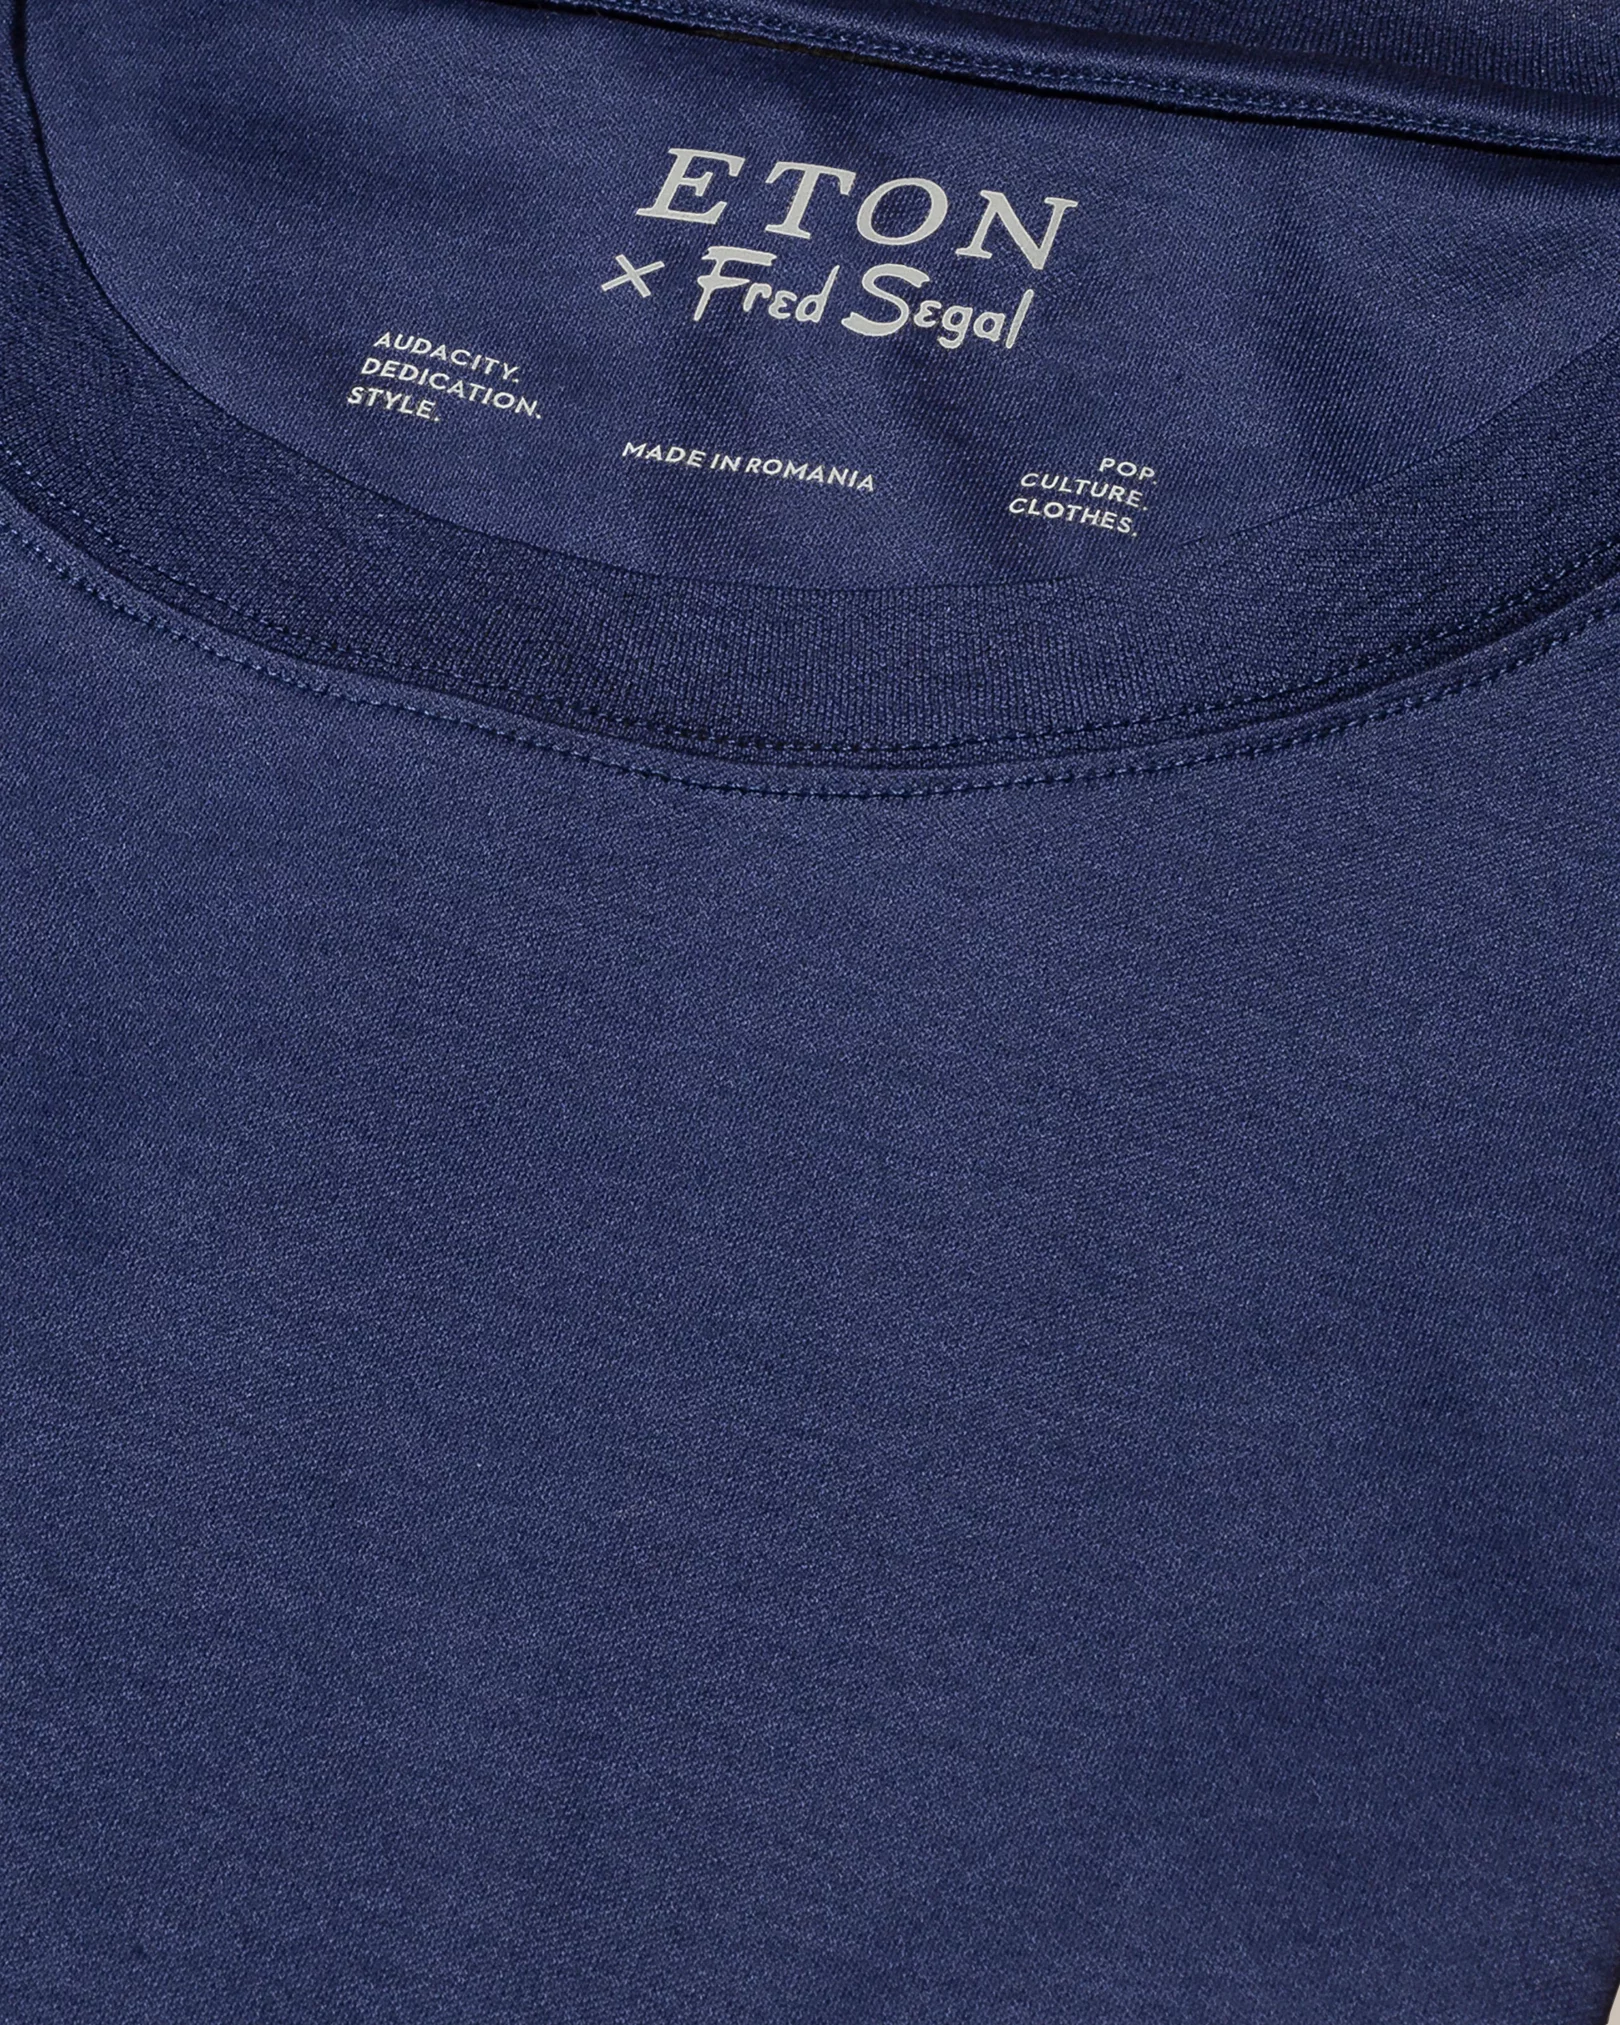 T-shirt bleu marine en fil d’Écosse, édition spéciale